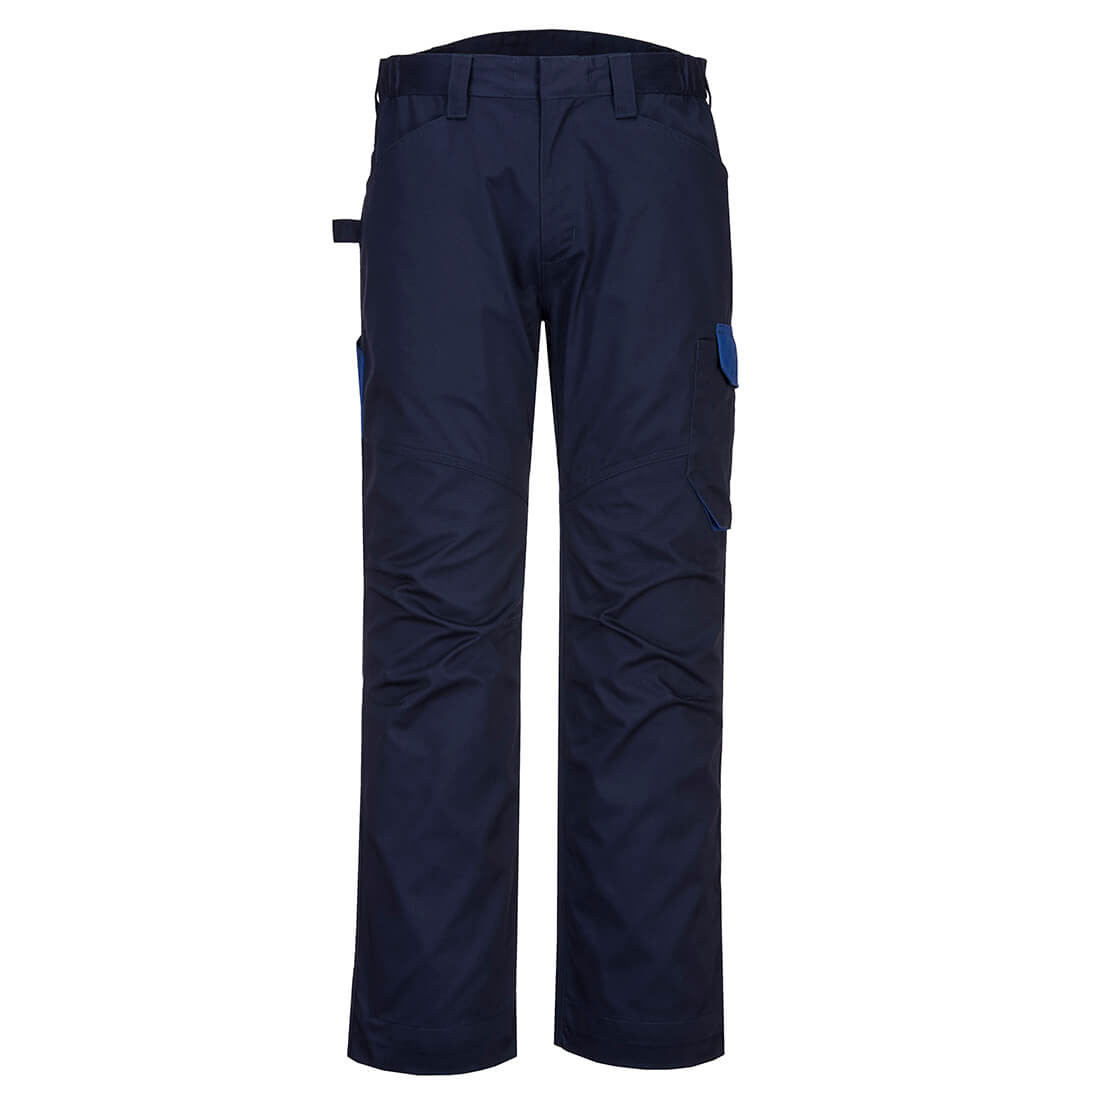 Pantalon de service PW2 - Les vêtements de protection